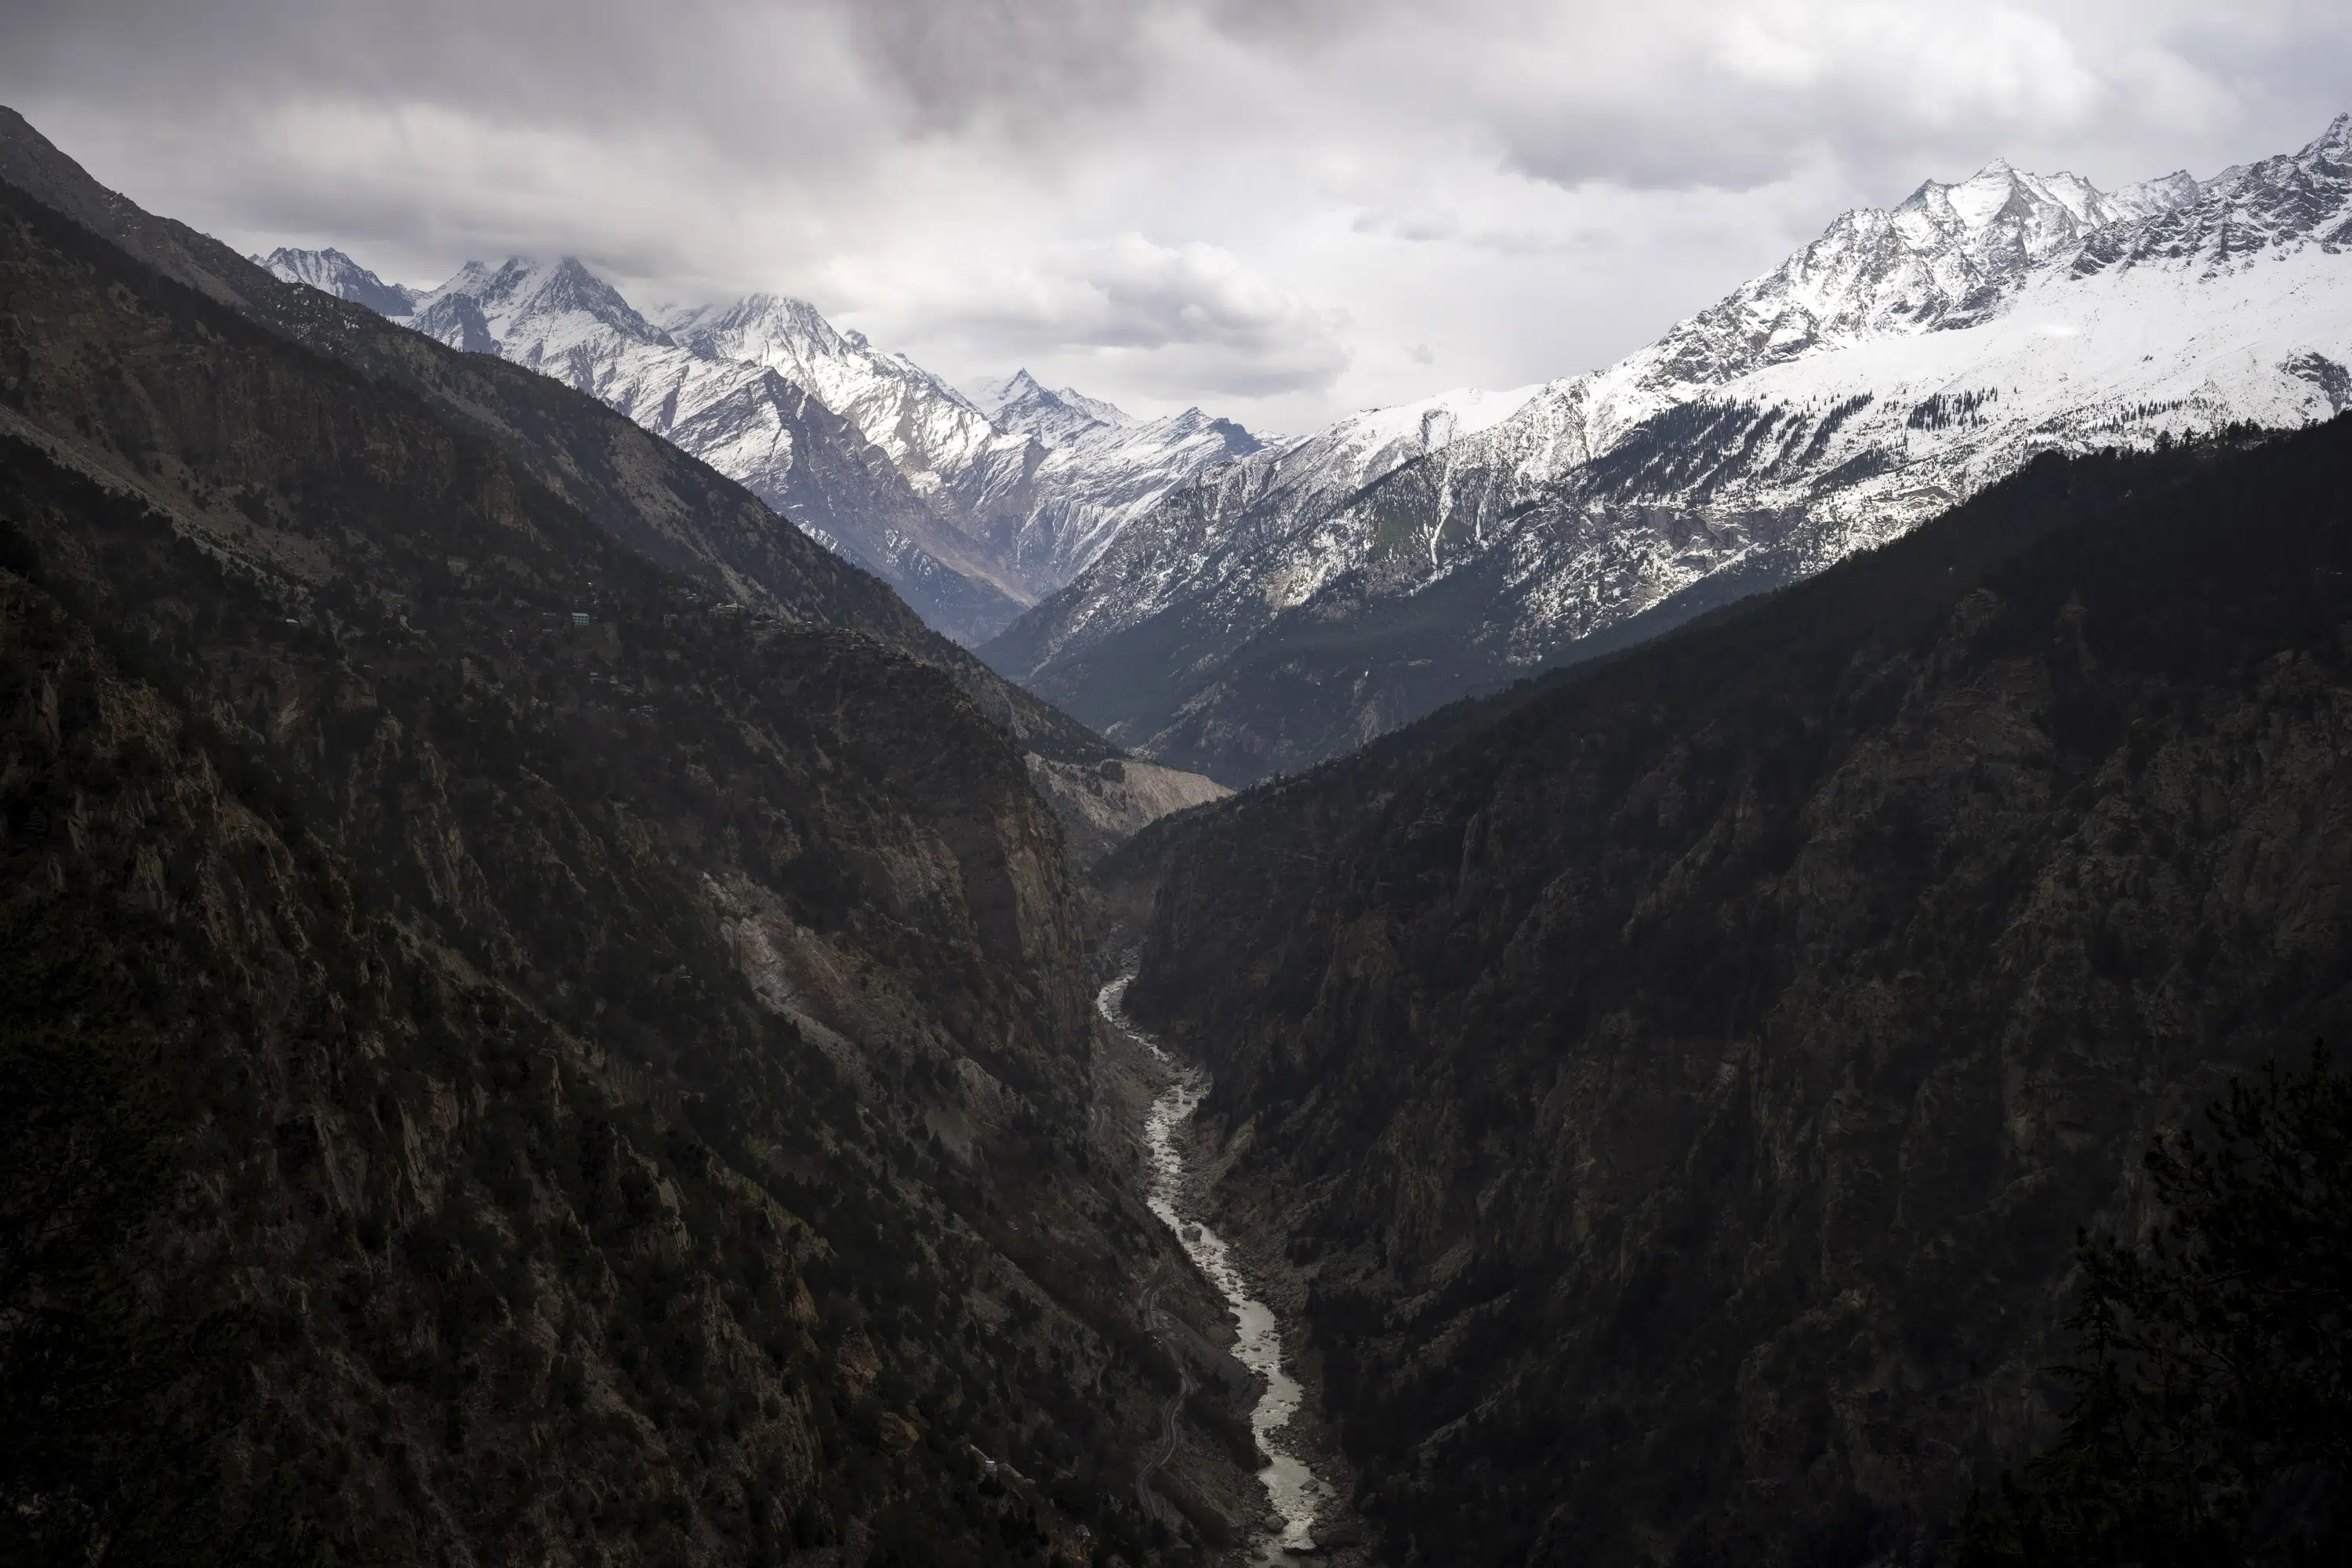 Les glaciers de l’Himalaya pourraient perdre 80% de leur volume si le réchauffement climatique n’est pas contrôlé, selon une étude